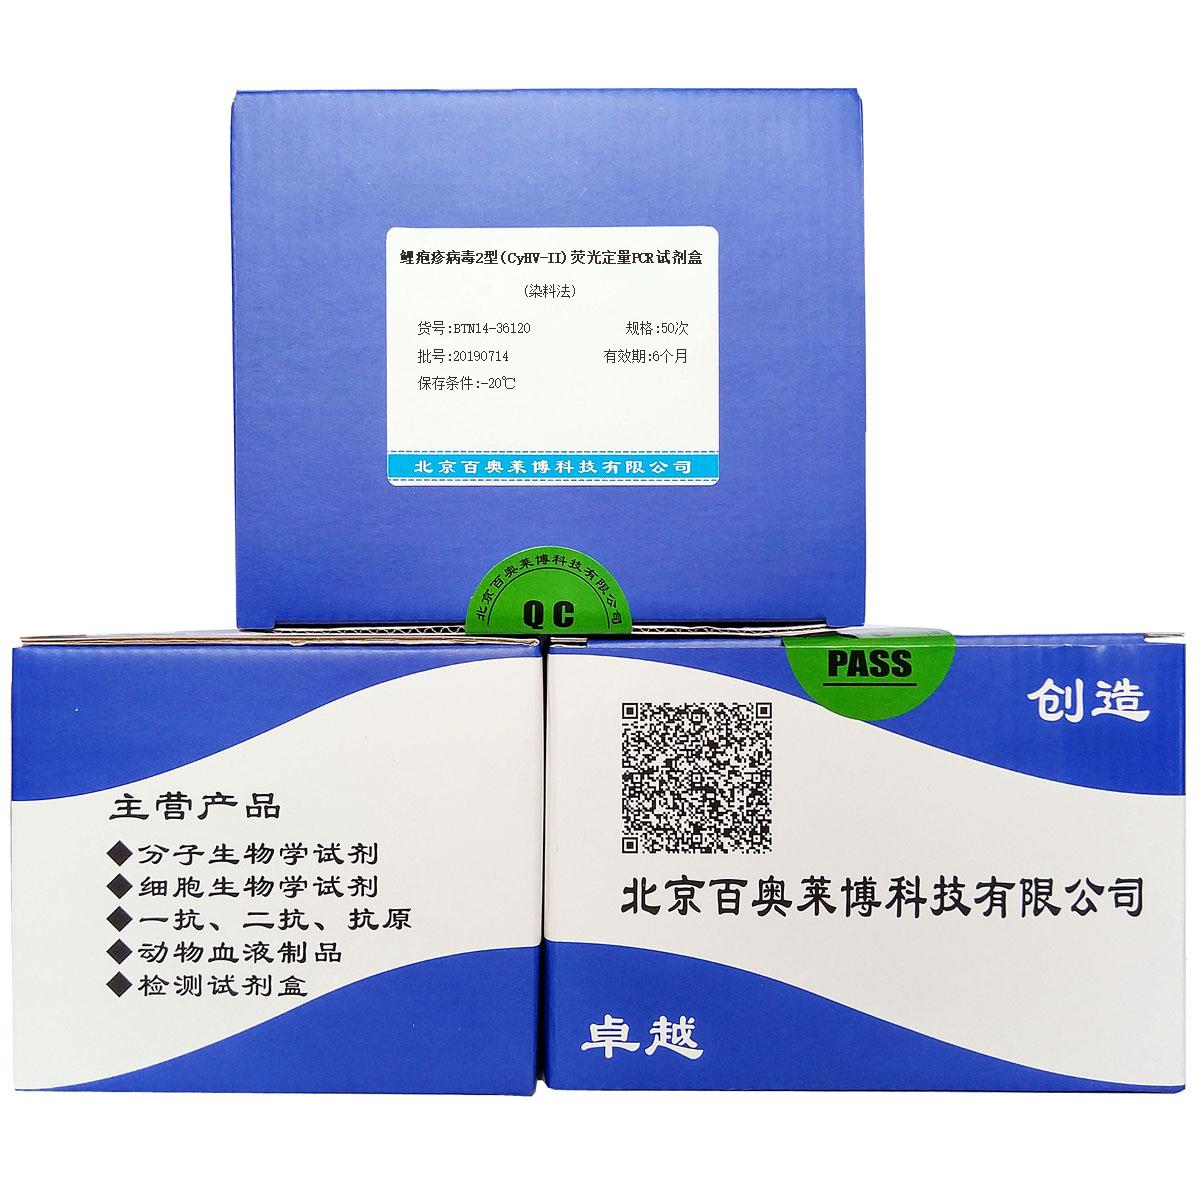 鲤疱疹病毒2型(CyHV-II)荧光定量PCR试剂盒(染料法)